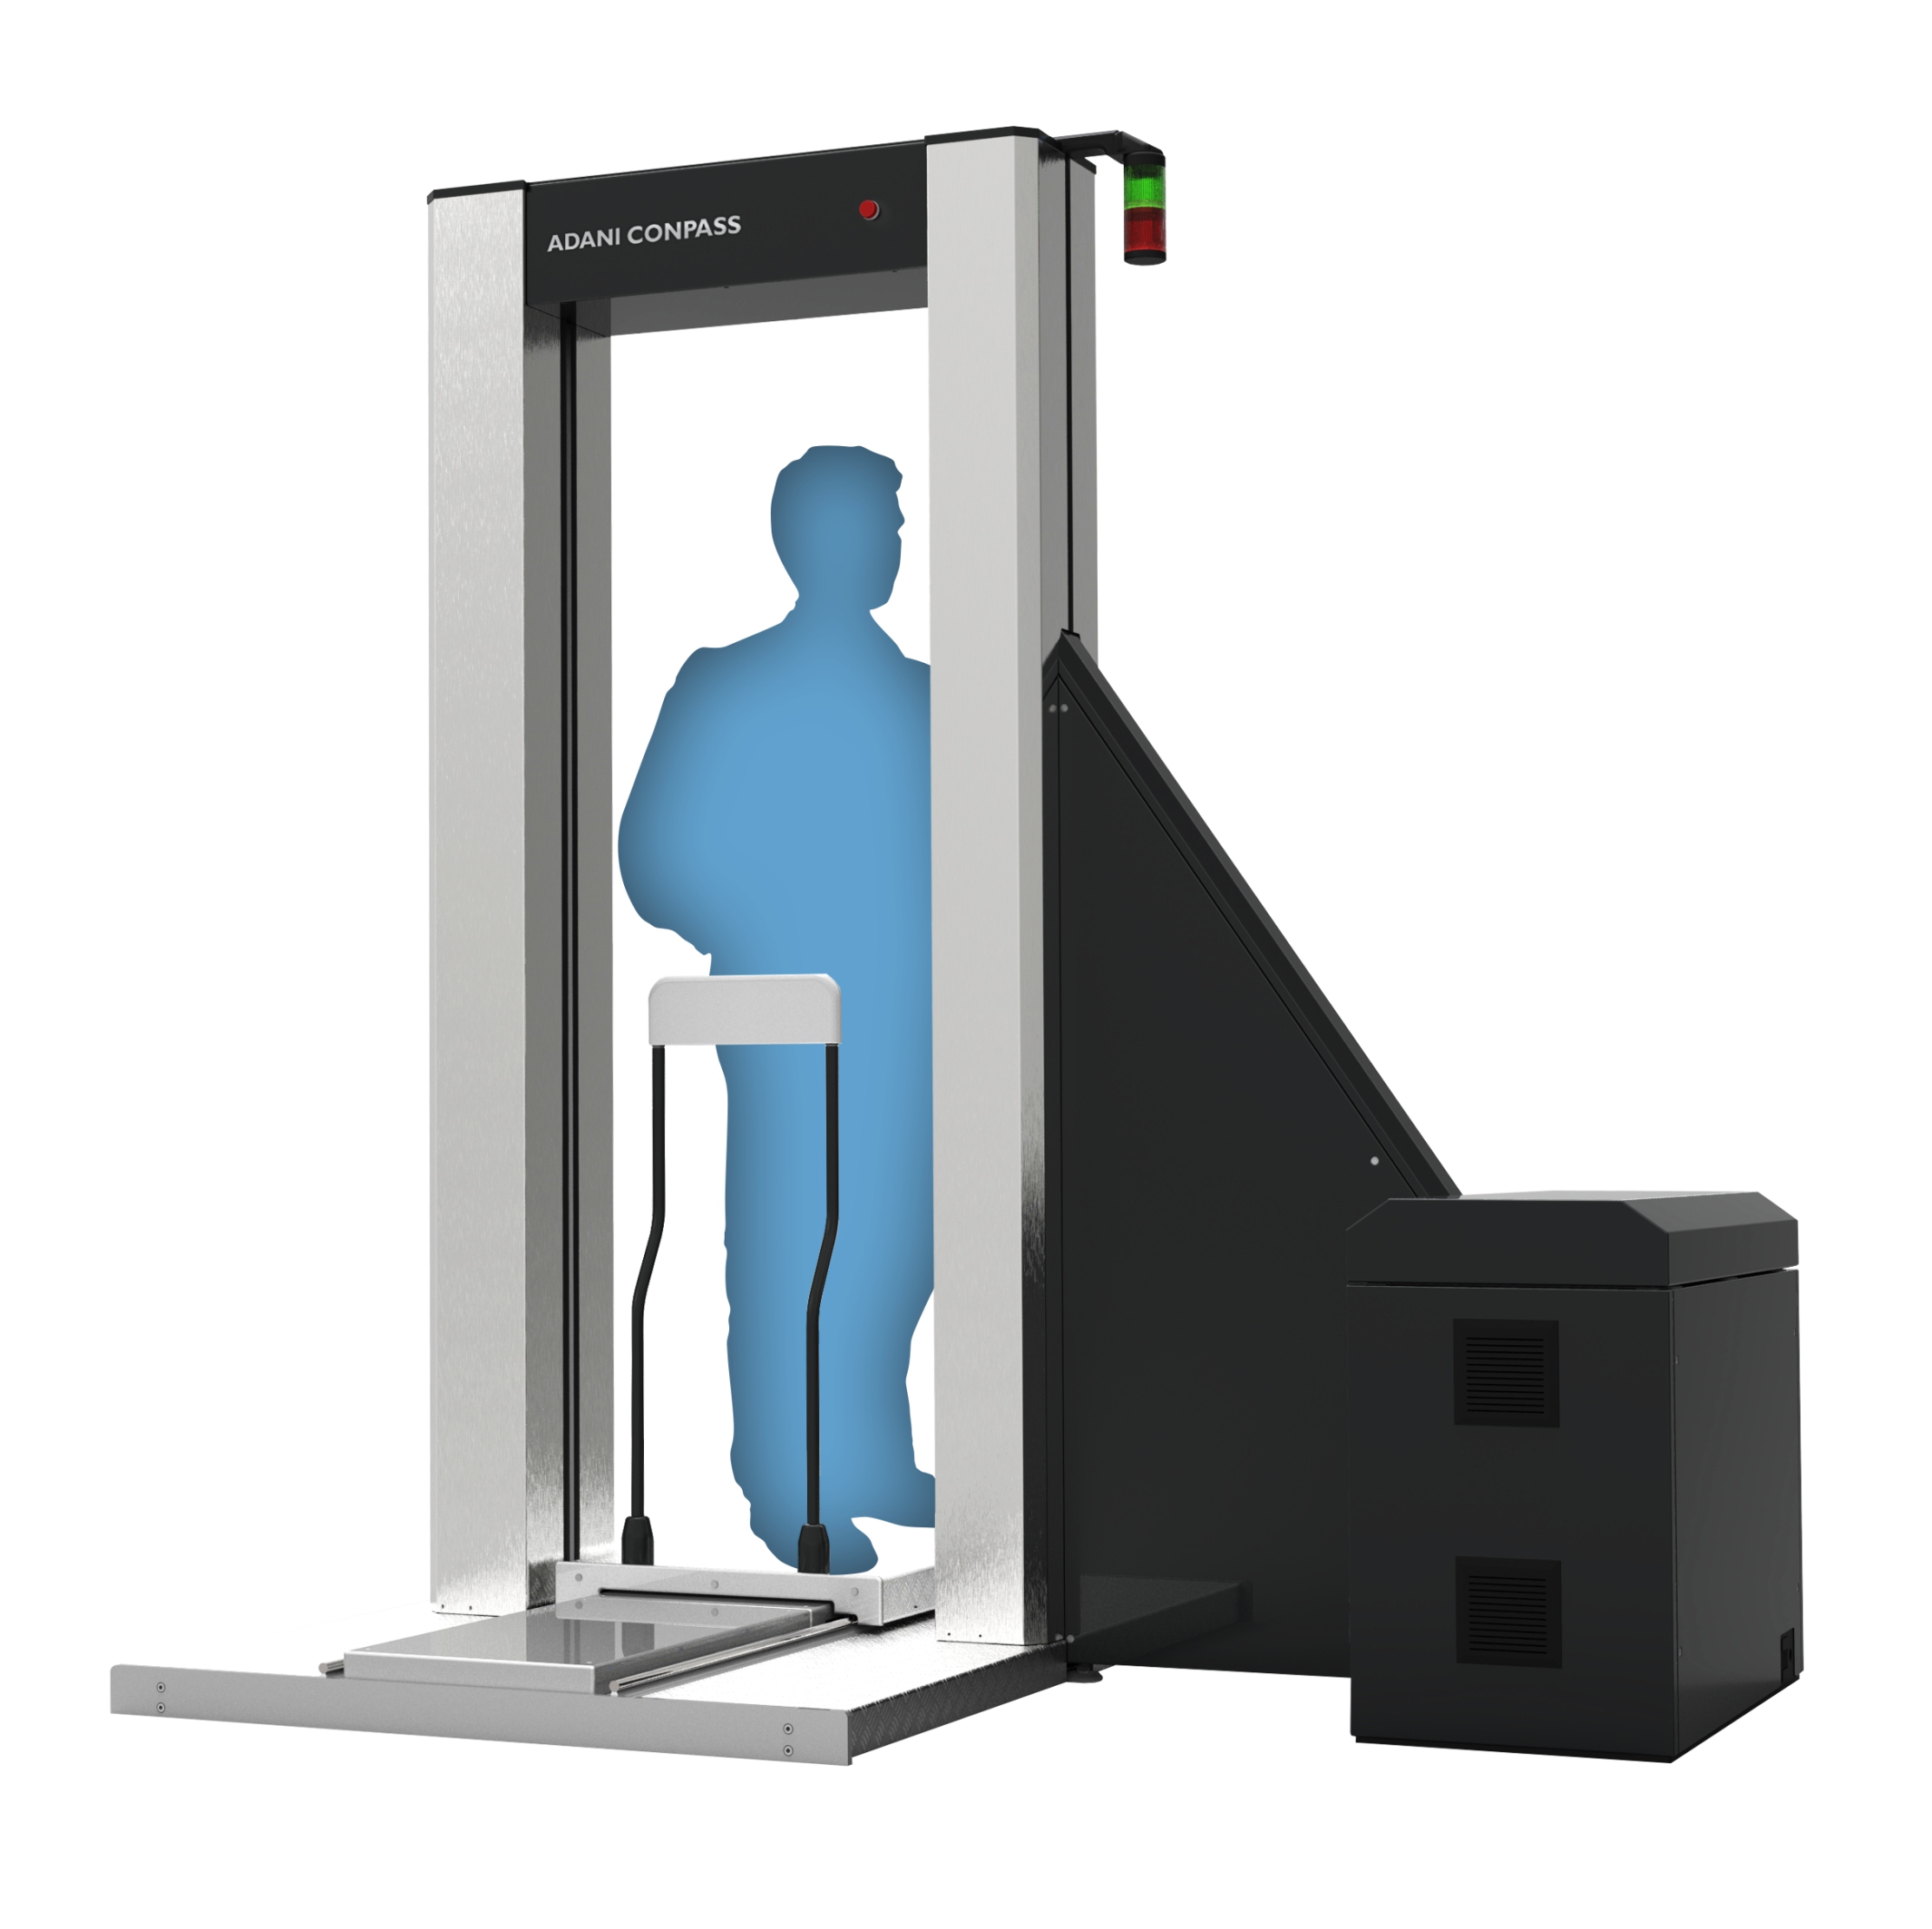 Место досмотра. Рентгеновская сканирующая система для персонального досмотра Consys. Рентгенотелевизионные интроскопы в аэропорту. КОНПАСС Адани. Сканер персонального досмотра КОНПАСС.